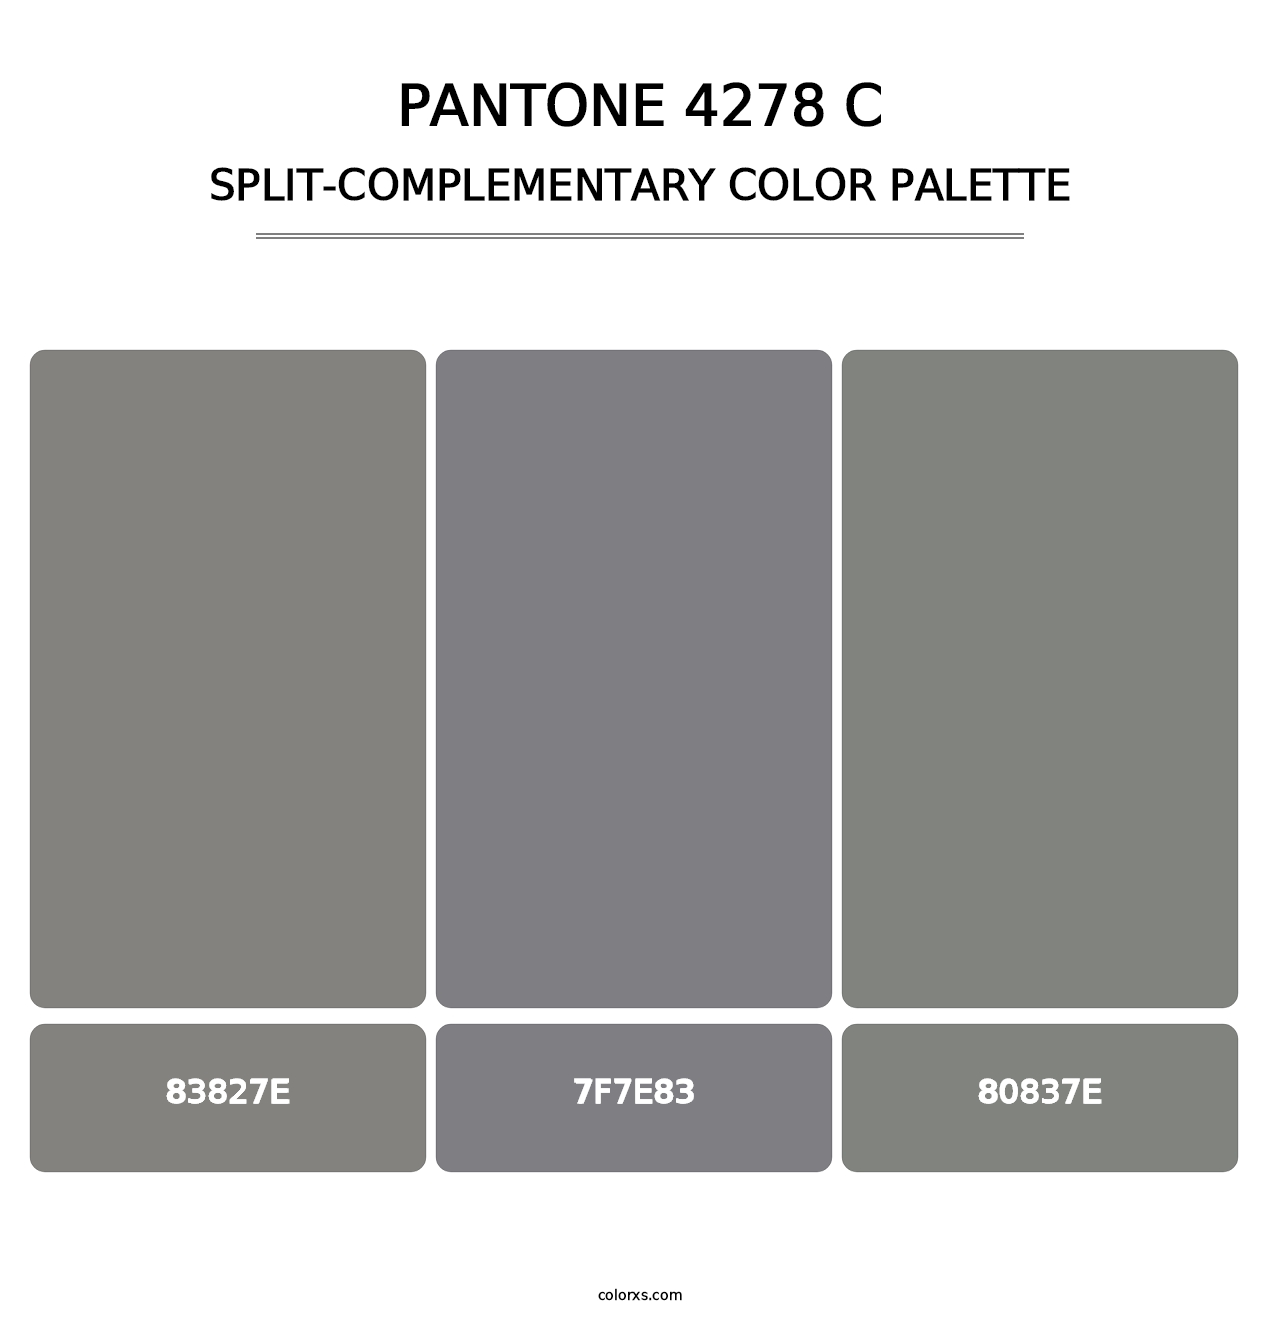 PANTONE 4278 C - Split-Complementary Color Palette